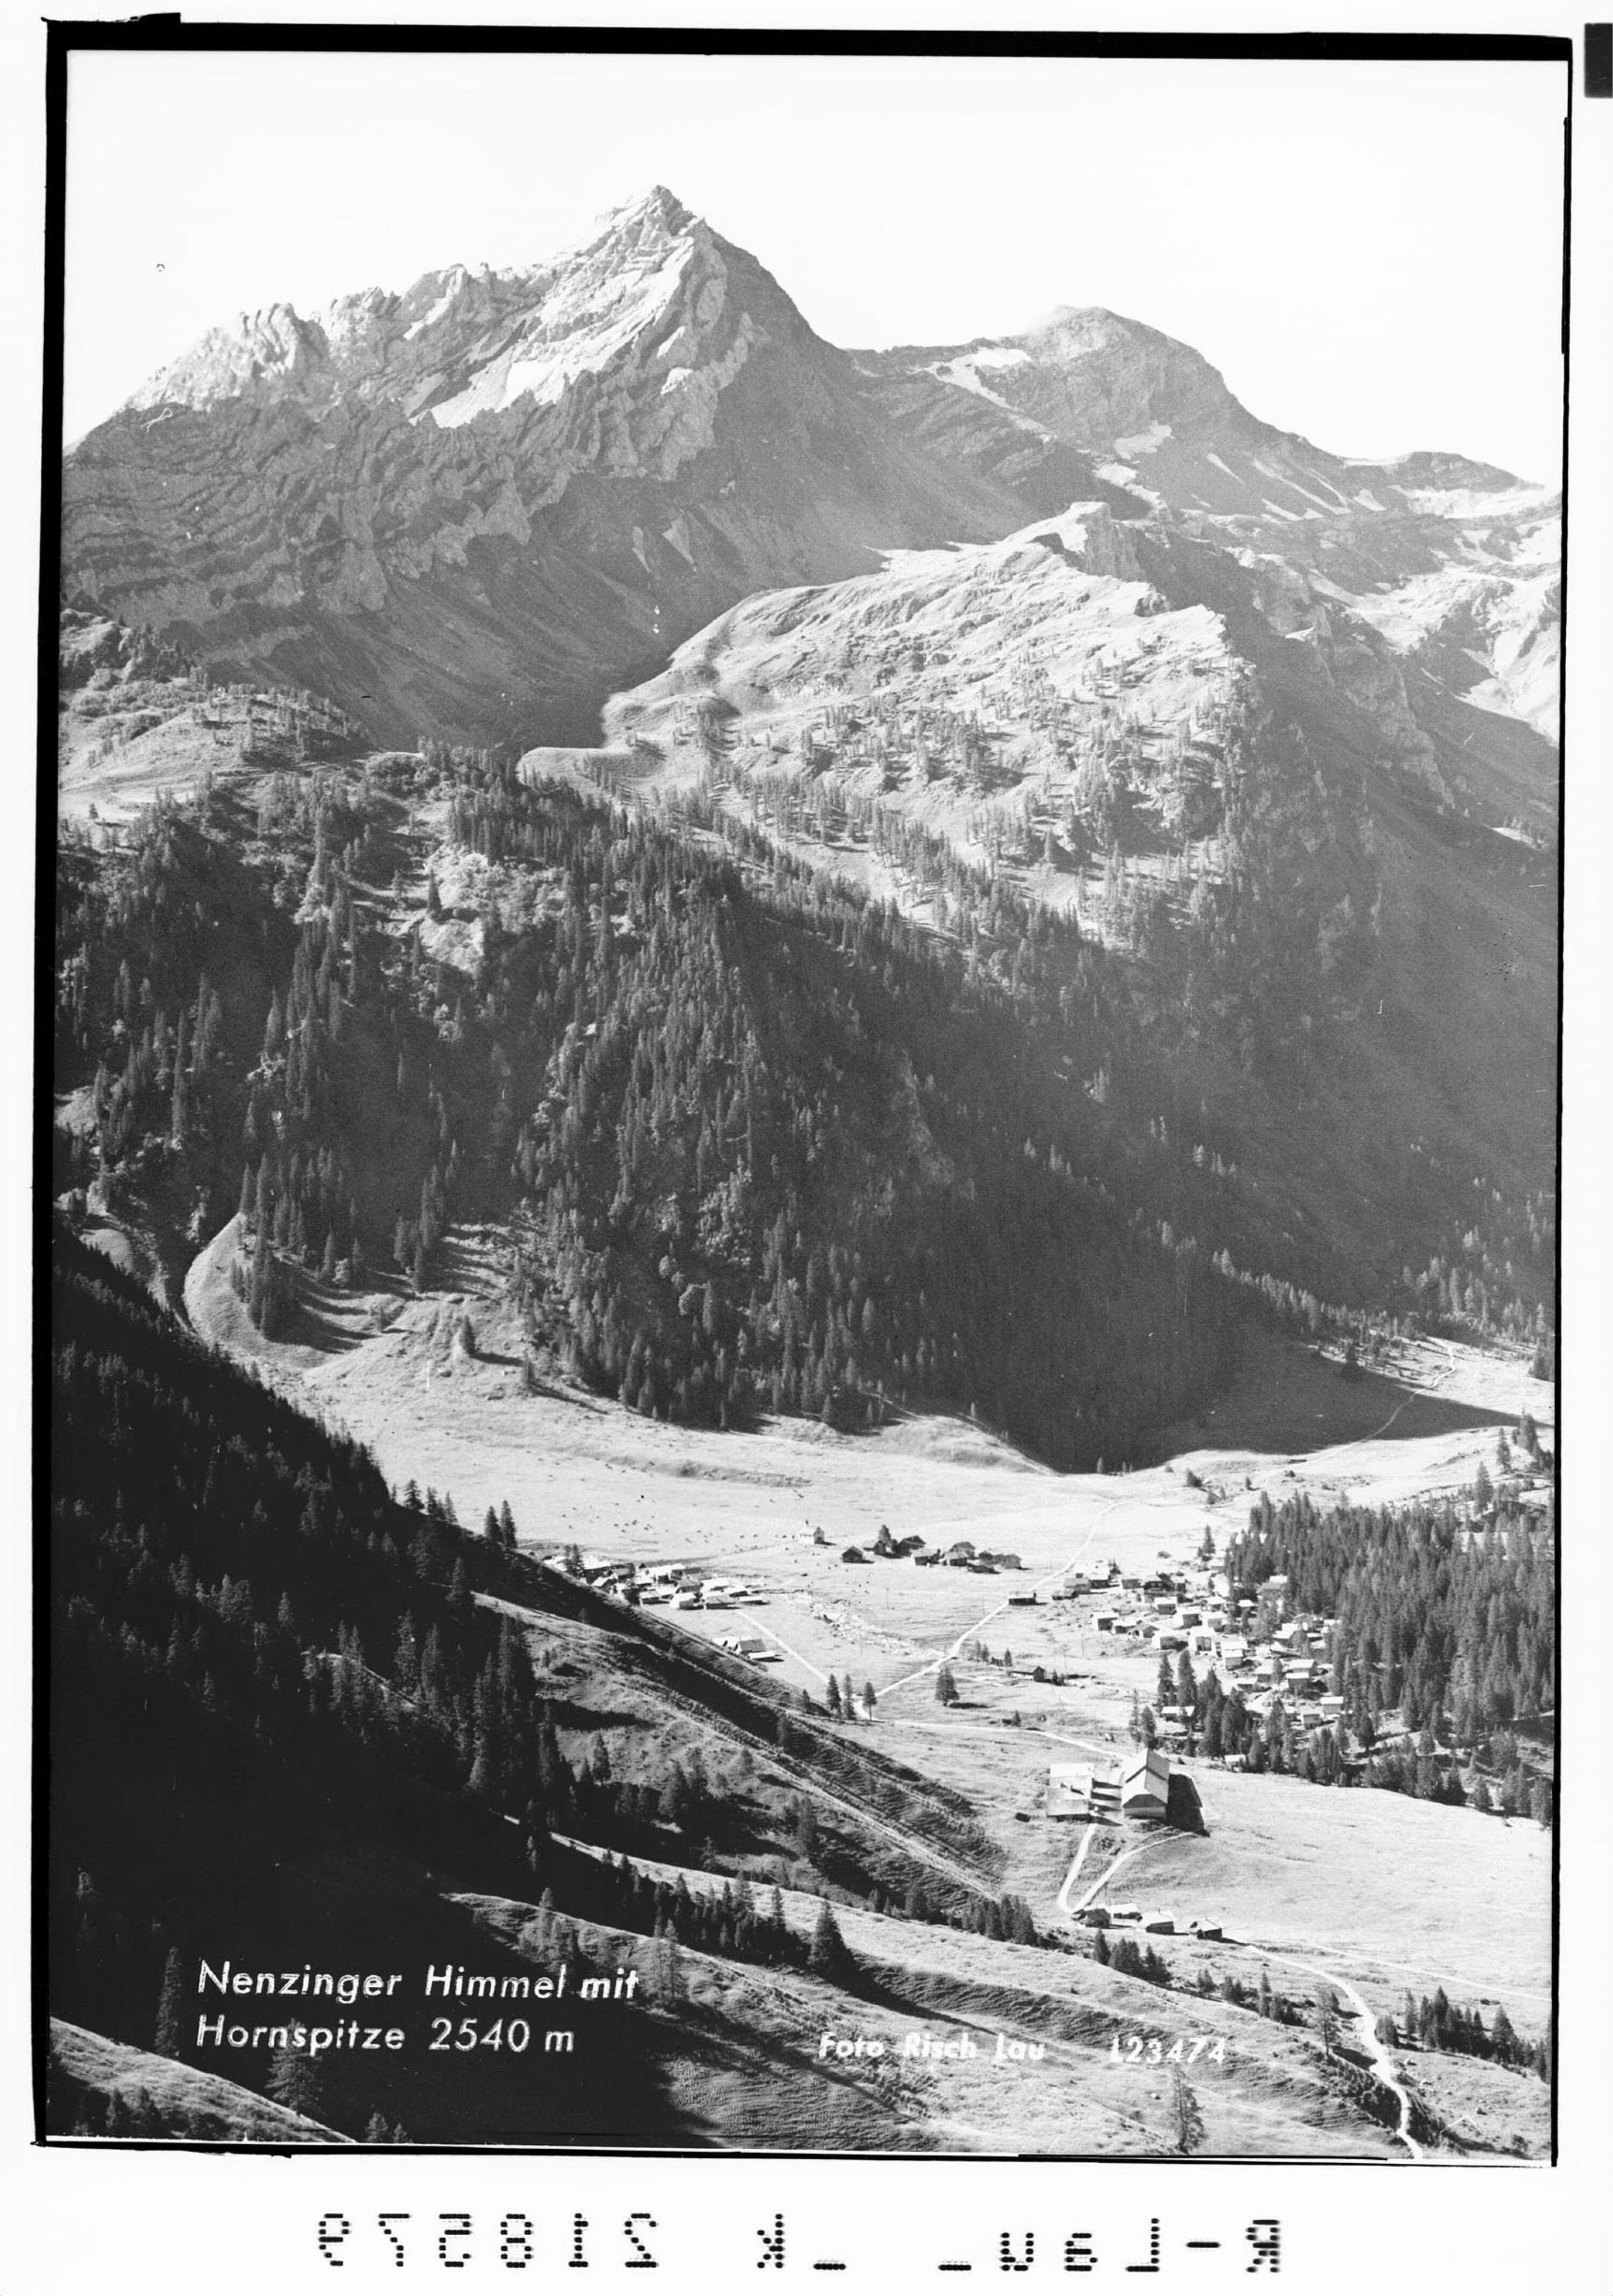 Nenzinger Himmel mit Hornspitze 2540 m></div>


    <hr>
    <div class=